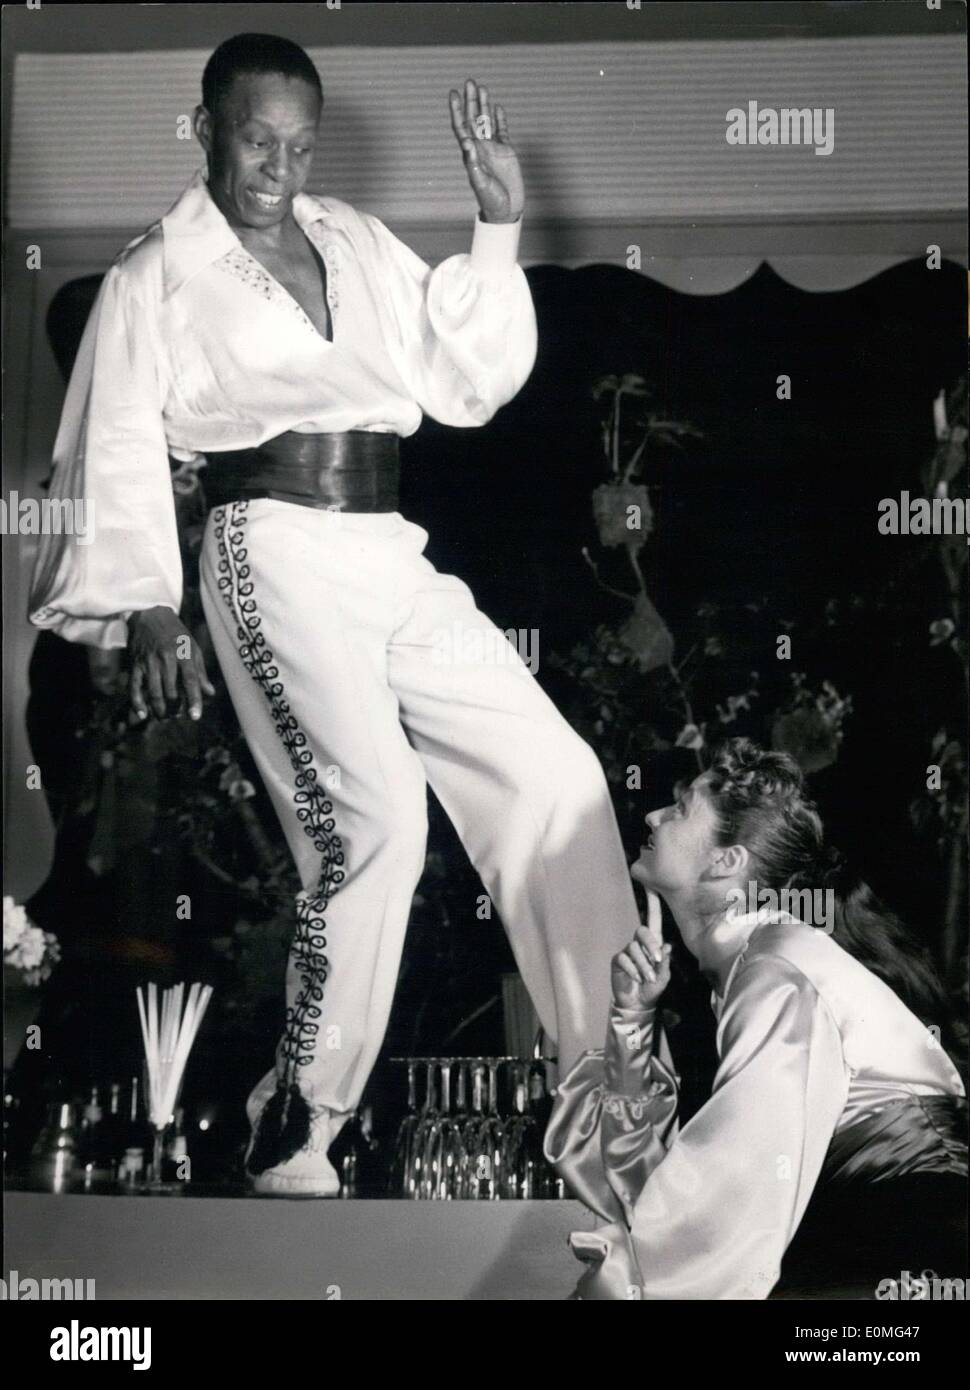 Mar 08, 1955 - nella foto è raffigurato il mondo' miglior ballerino passo John Bubbels insieme con il suo partner, attrice Caterina Valente. Hanno recitato nel film ''Ball im Savoy. Foto Stock